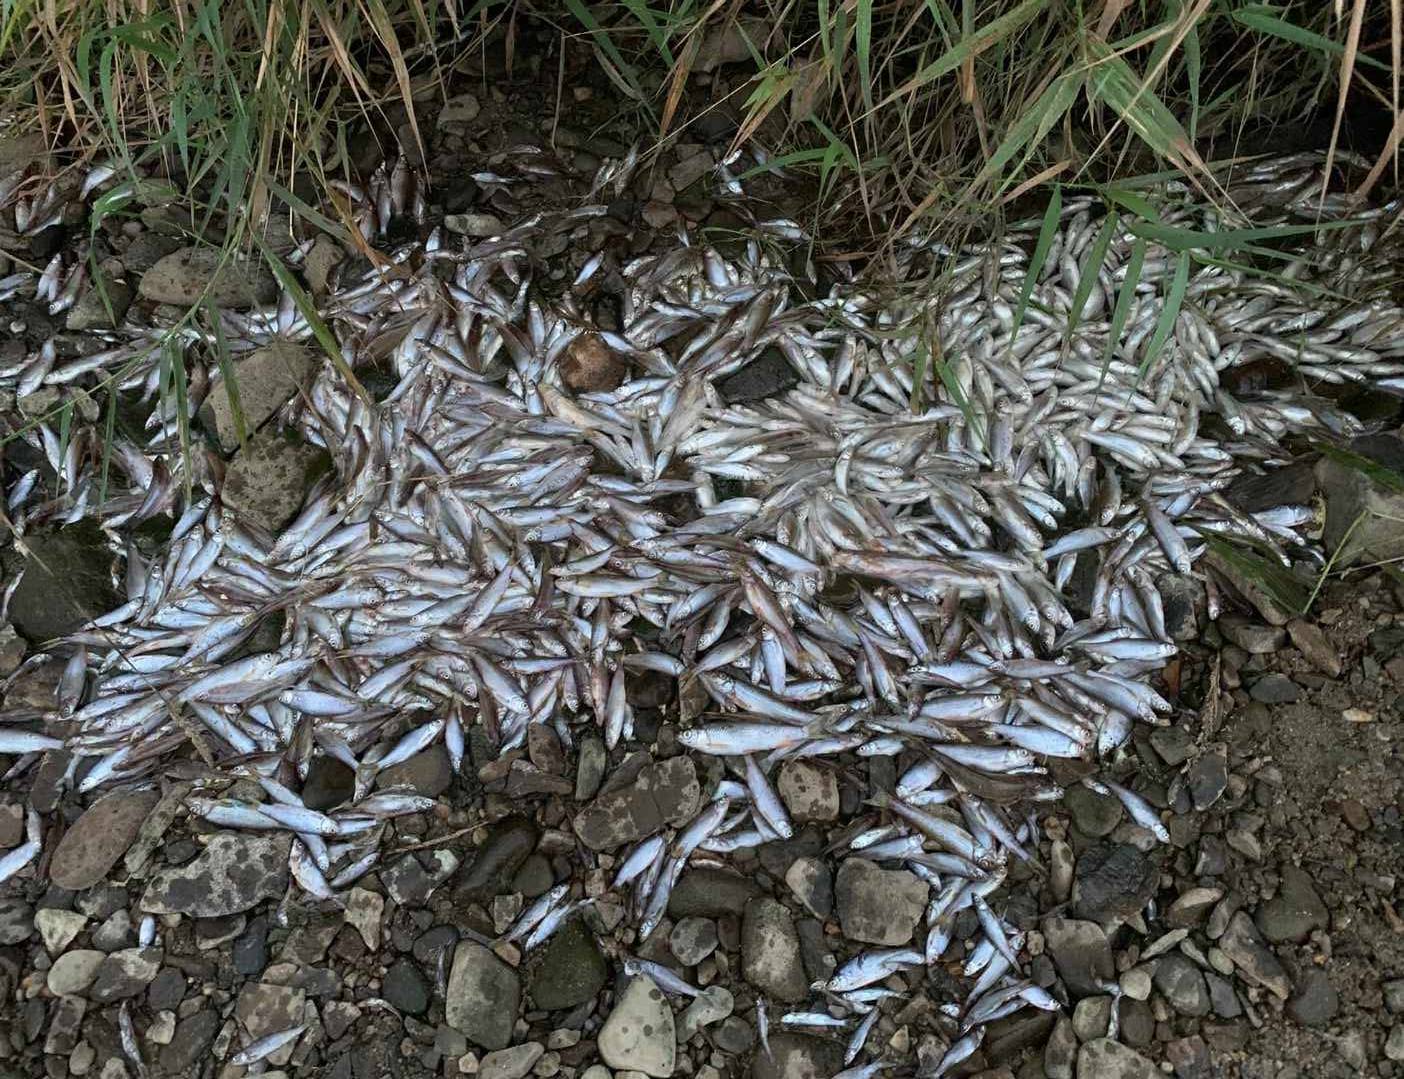 martwe ryby leżą na brzegu